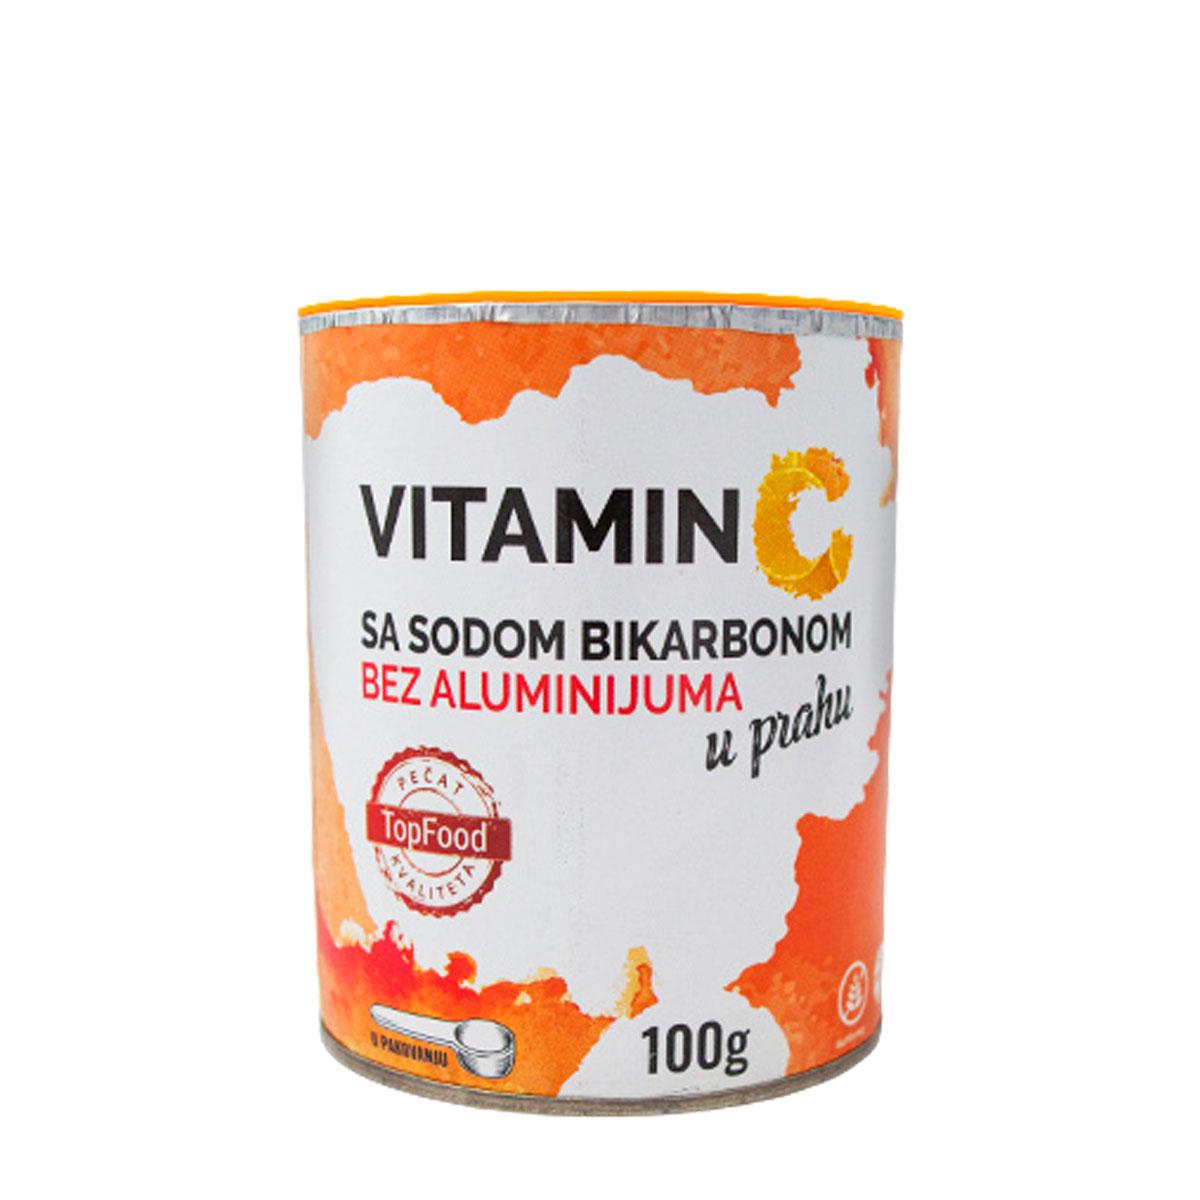 TOP FOOD Vitamin C sa sodom bikarbonom bez aluminijuma 100g